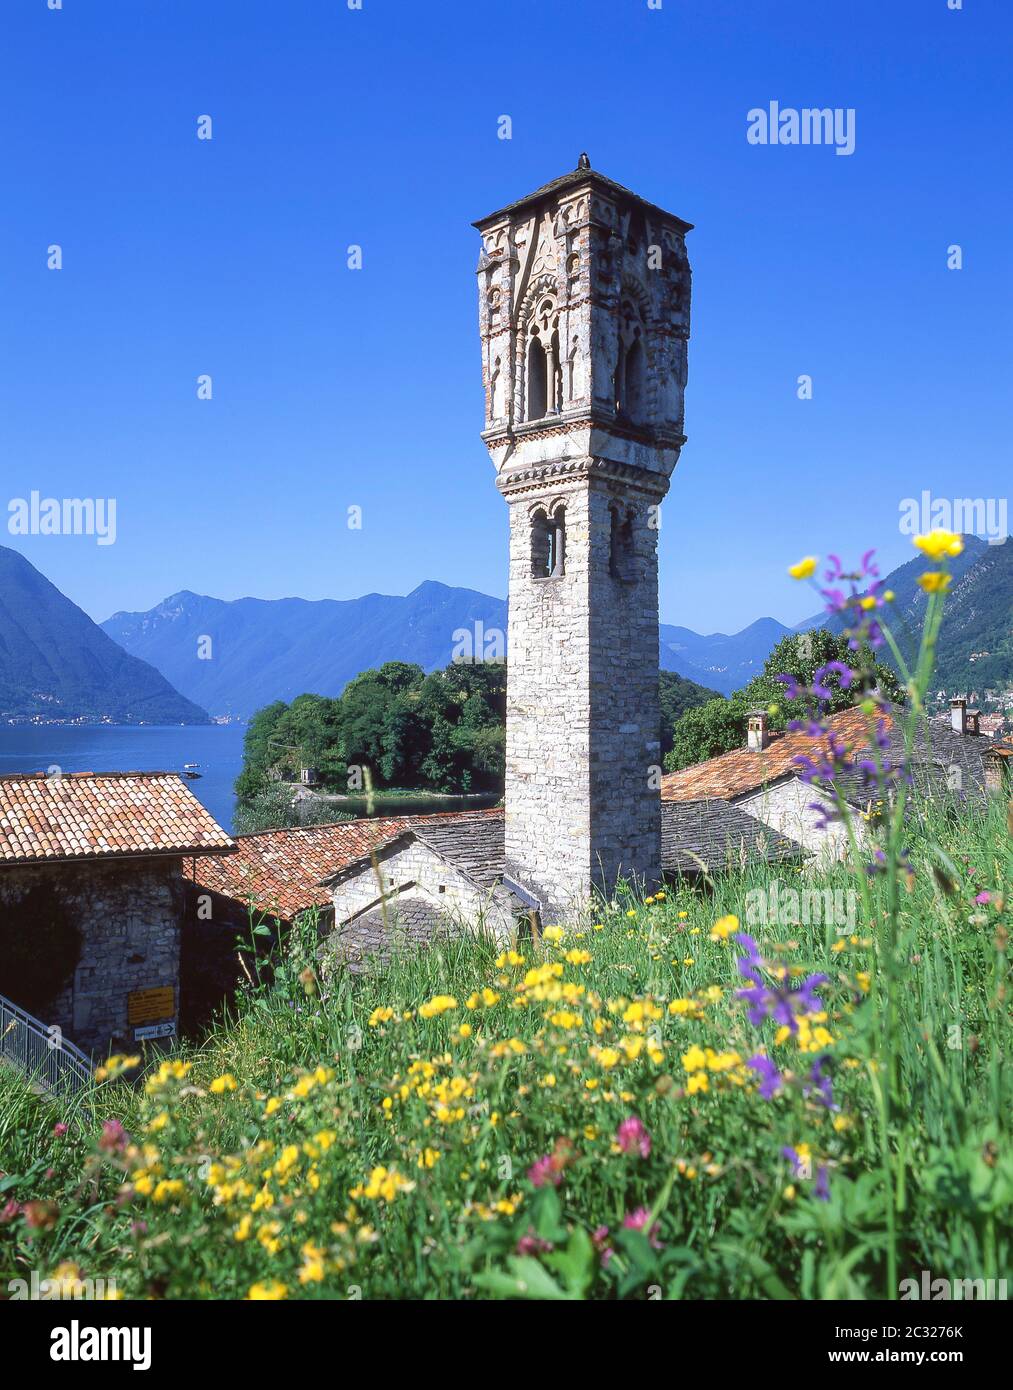 Campanile di Ossuccio (Bell Tower), Ossuccio, Province of Como, Lombardy Region, Italy Stock Photo